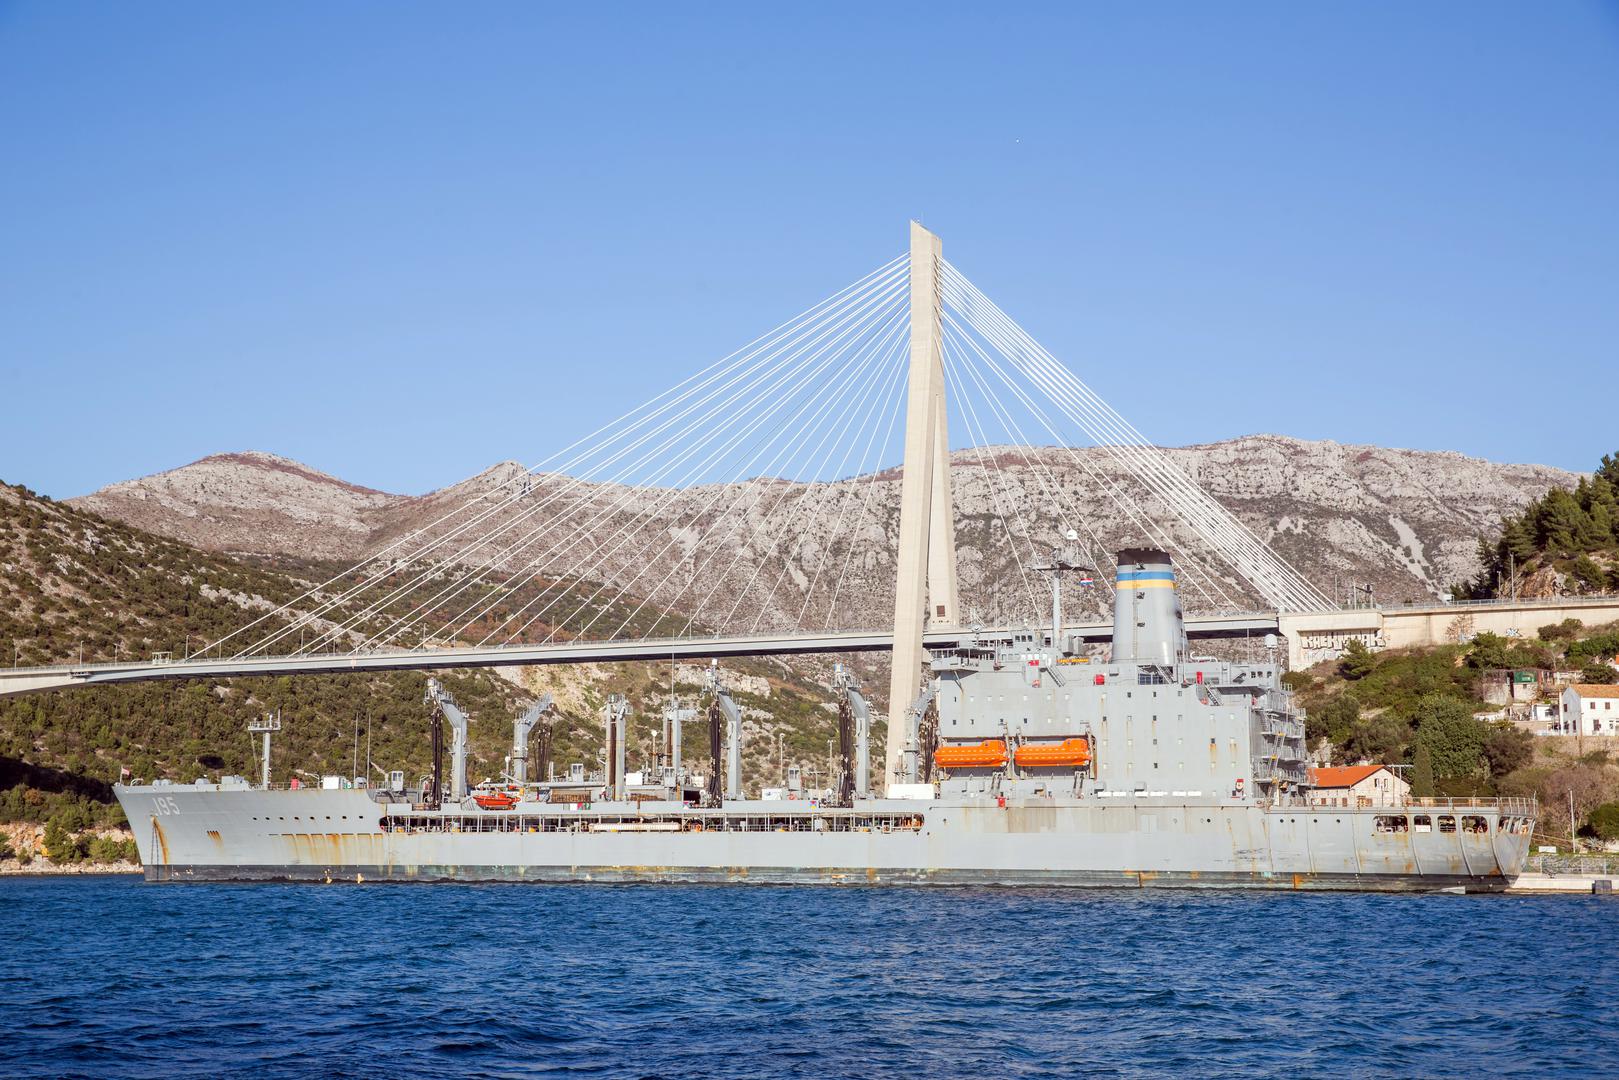 Tanker boravi u Dubrovniku u sklopu bilateralne vojne suradnje Hrvatske ratne mornarice s Ratnom mornaricom SAD-a.